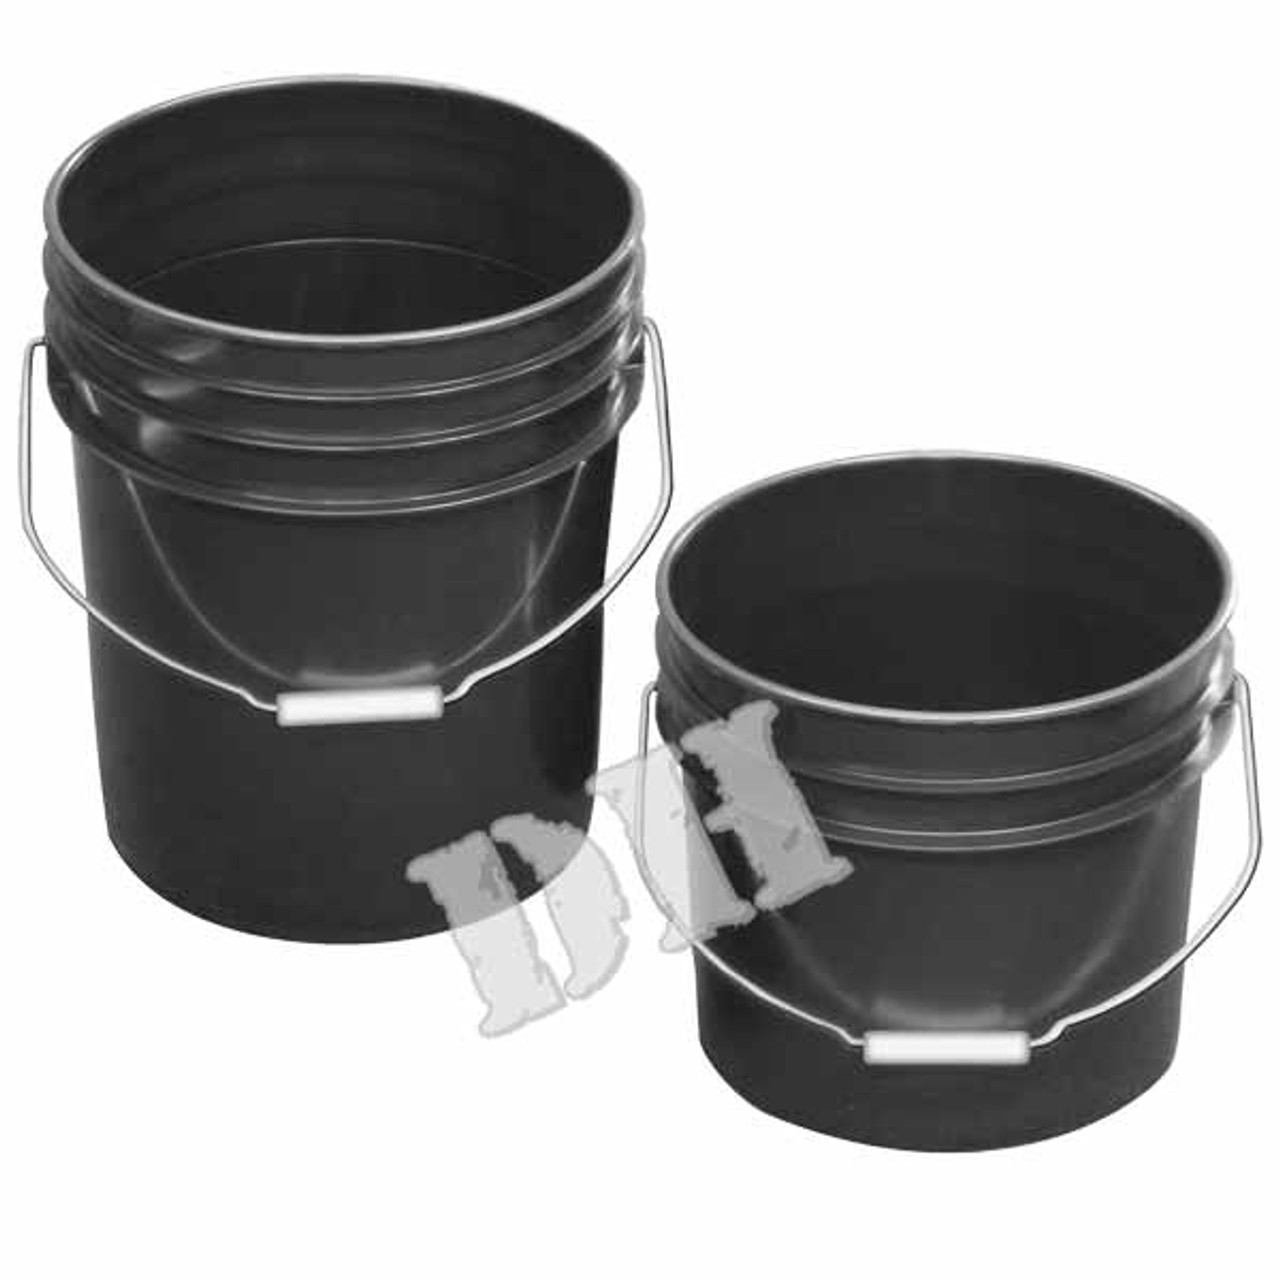 3.5 & 5 Gallon Buckets - CreatorHydro